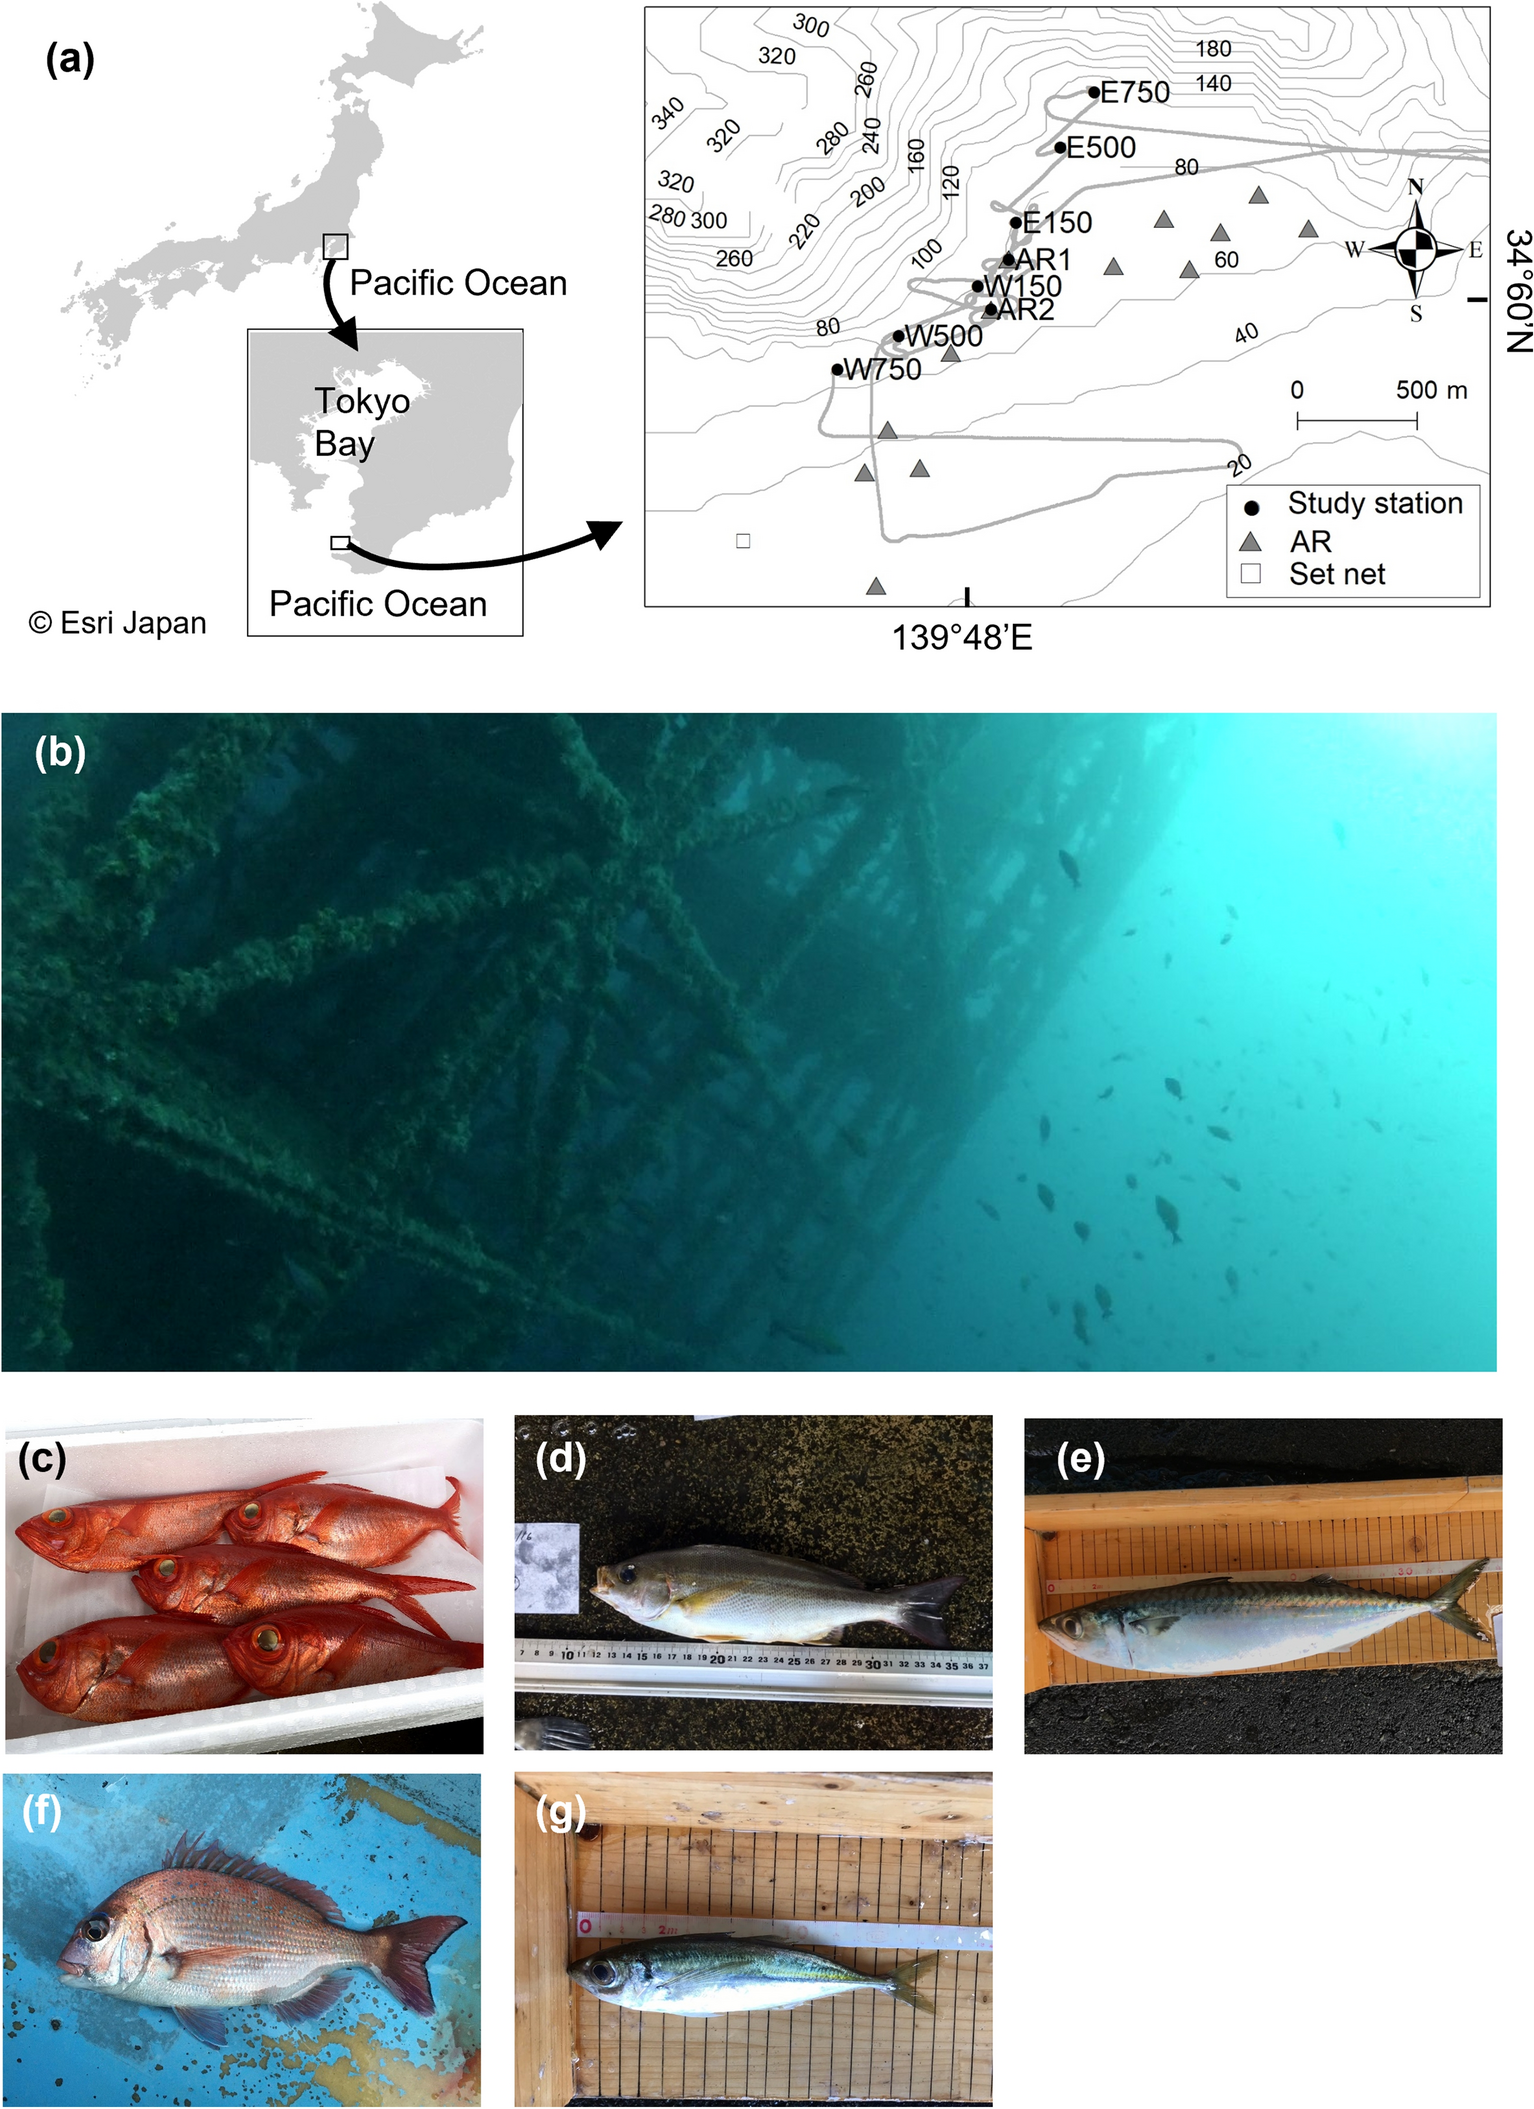 Quantitative assessment of multiple fish species around artificial